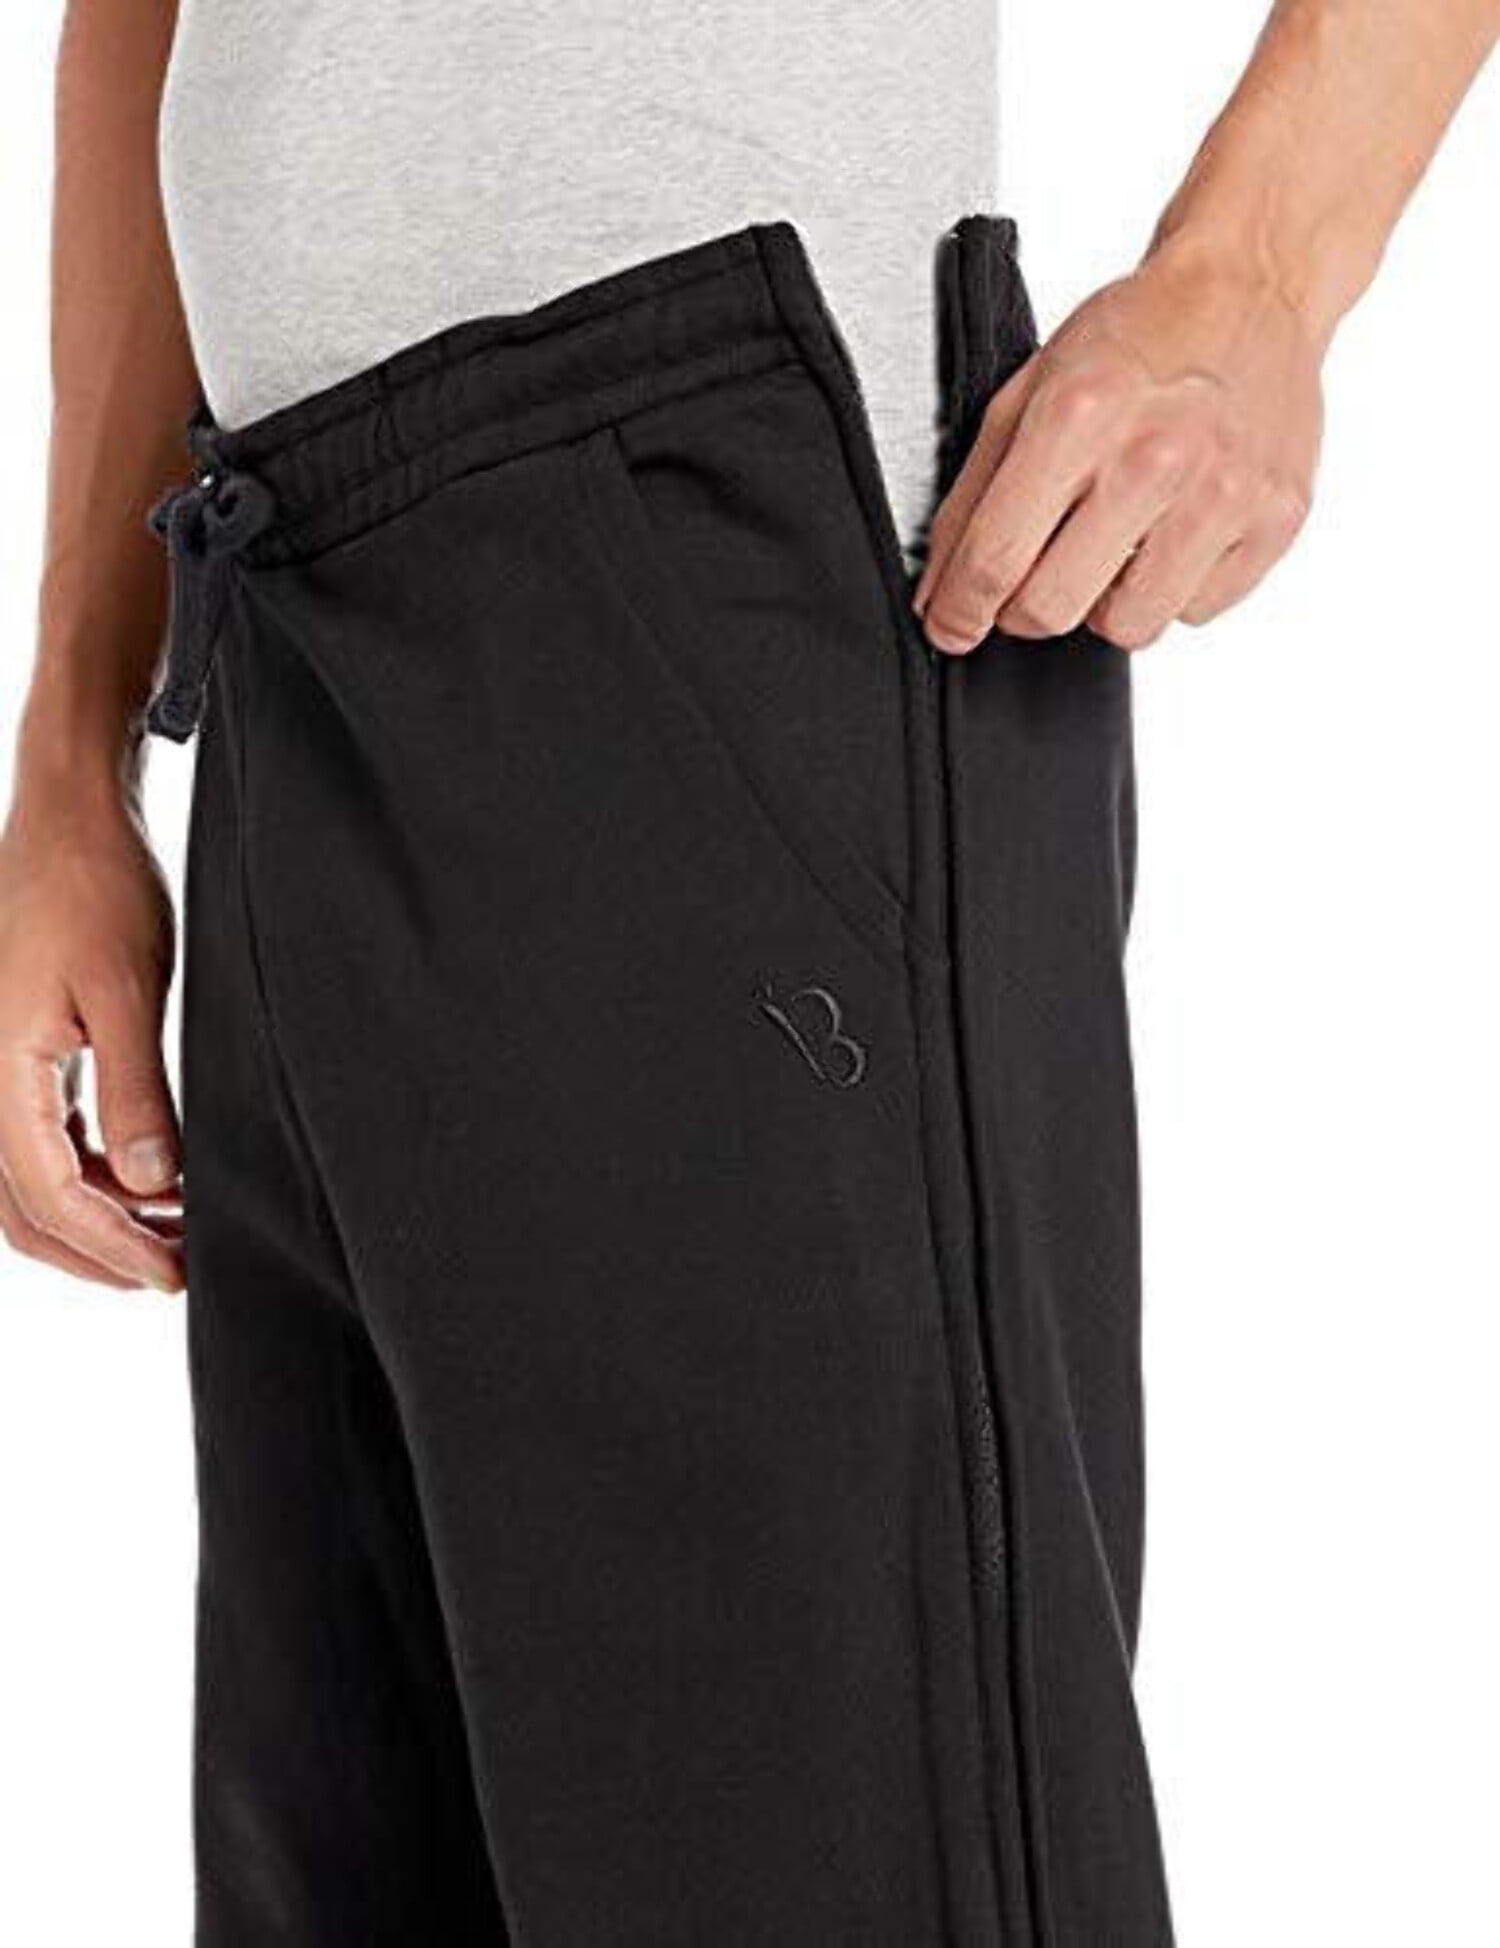 Full Side-Zipper Fleece Pants w/Pockets-Opens TOP to BOTTOM 